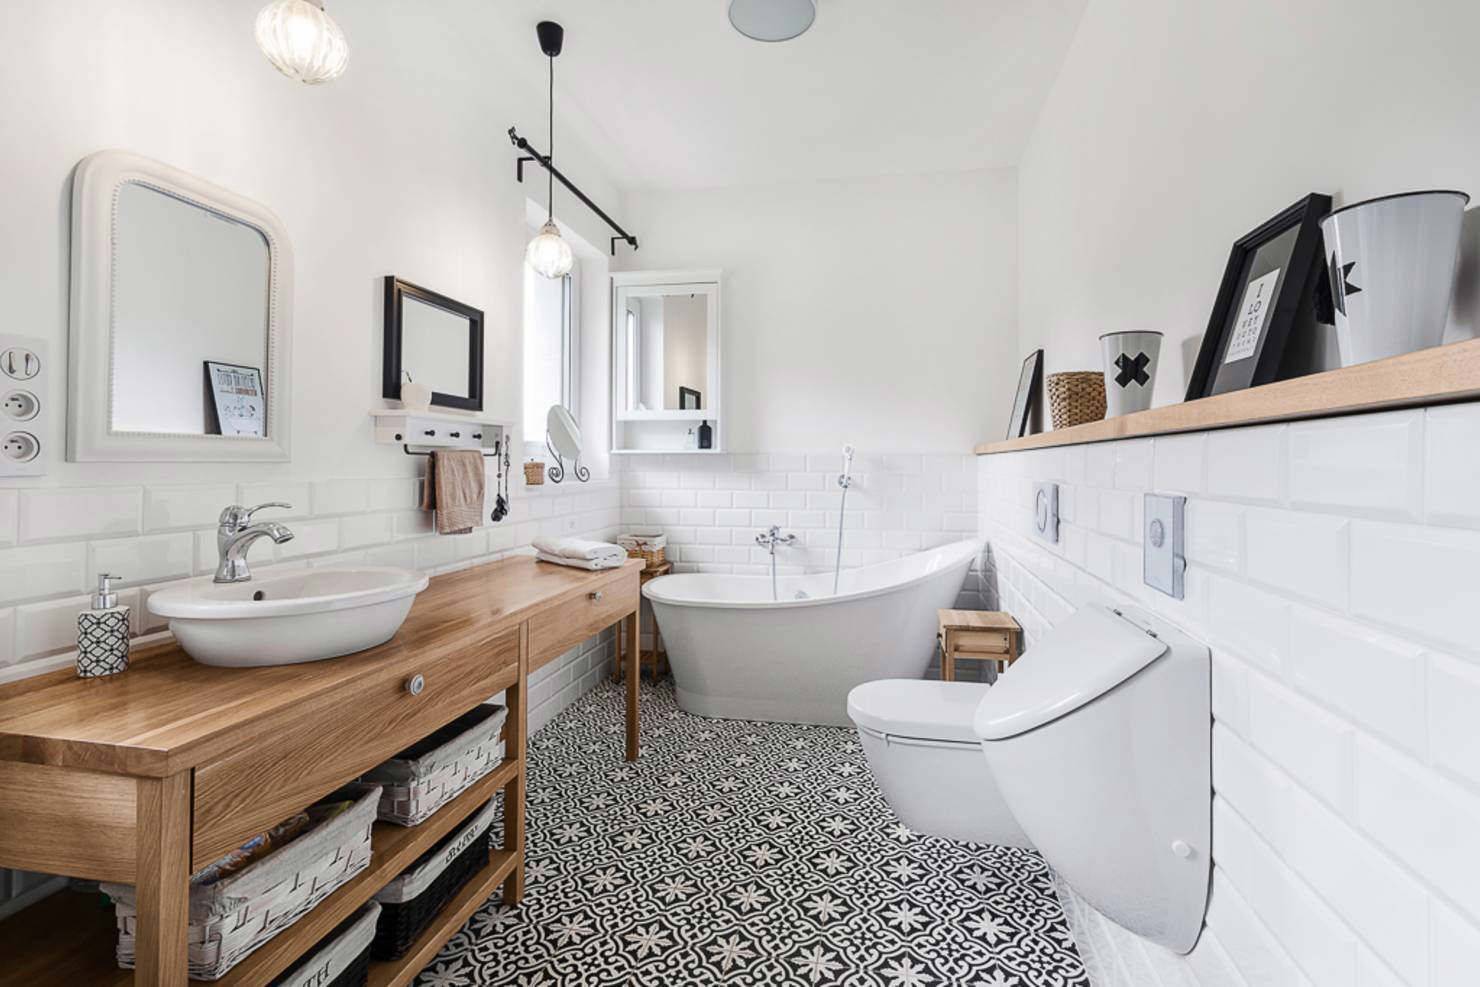 Ванная комната в скандинавском стиле: идеи интерьера